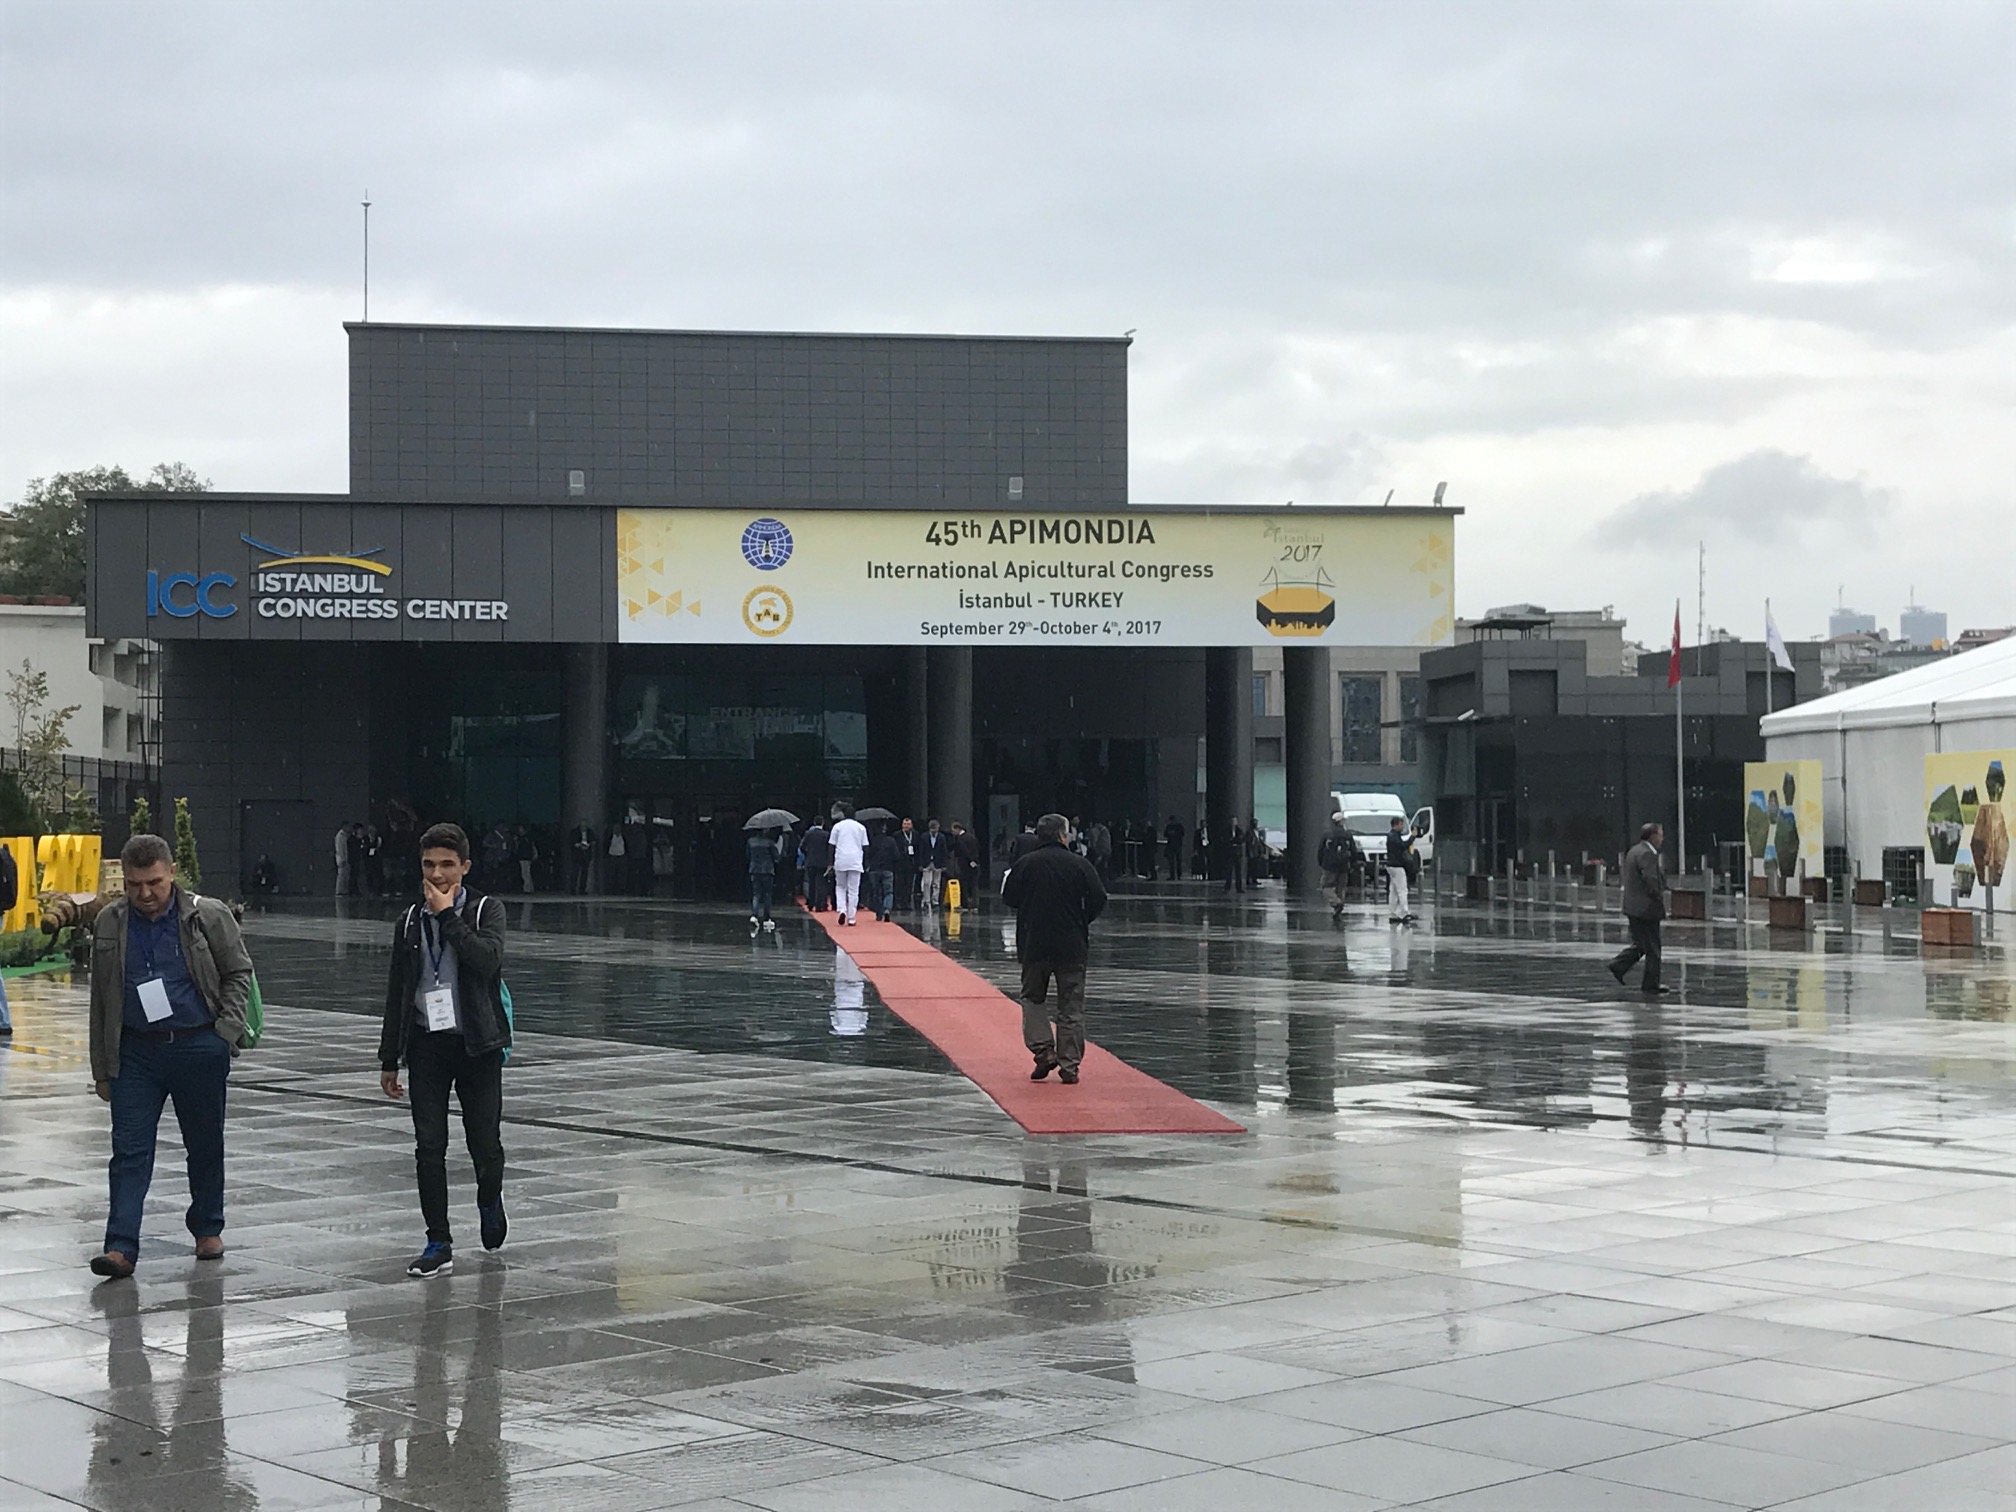 Entrée Apimondia 2017 à Istanbul